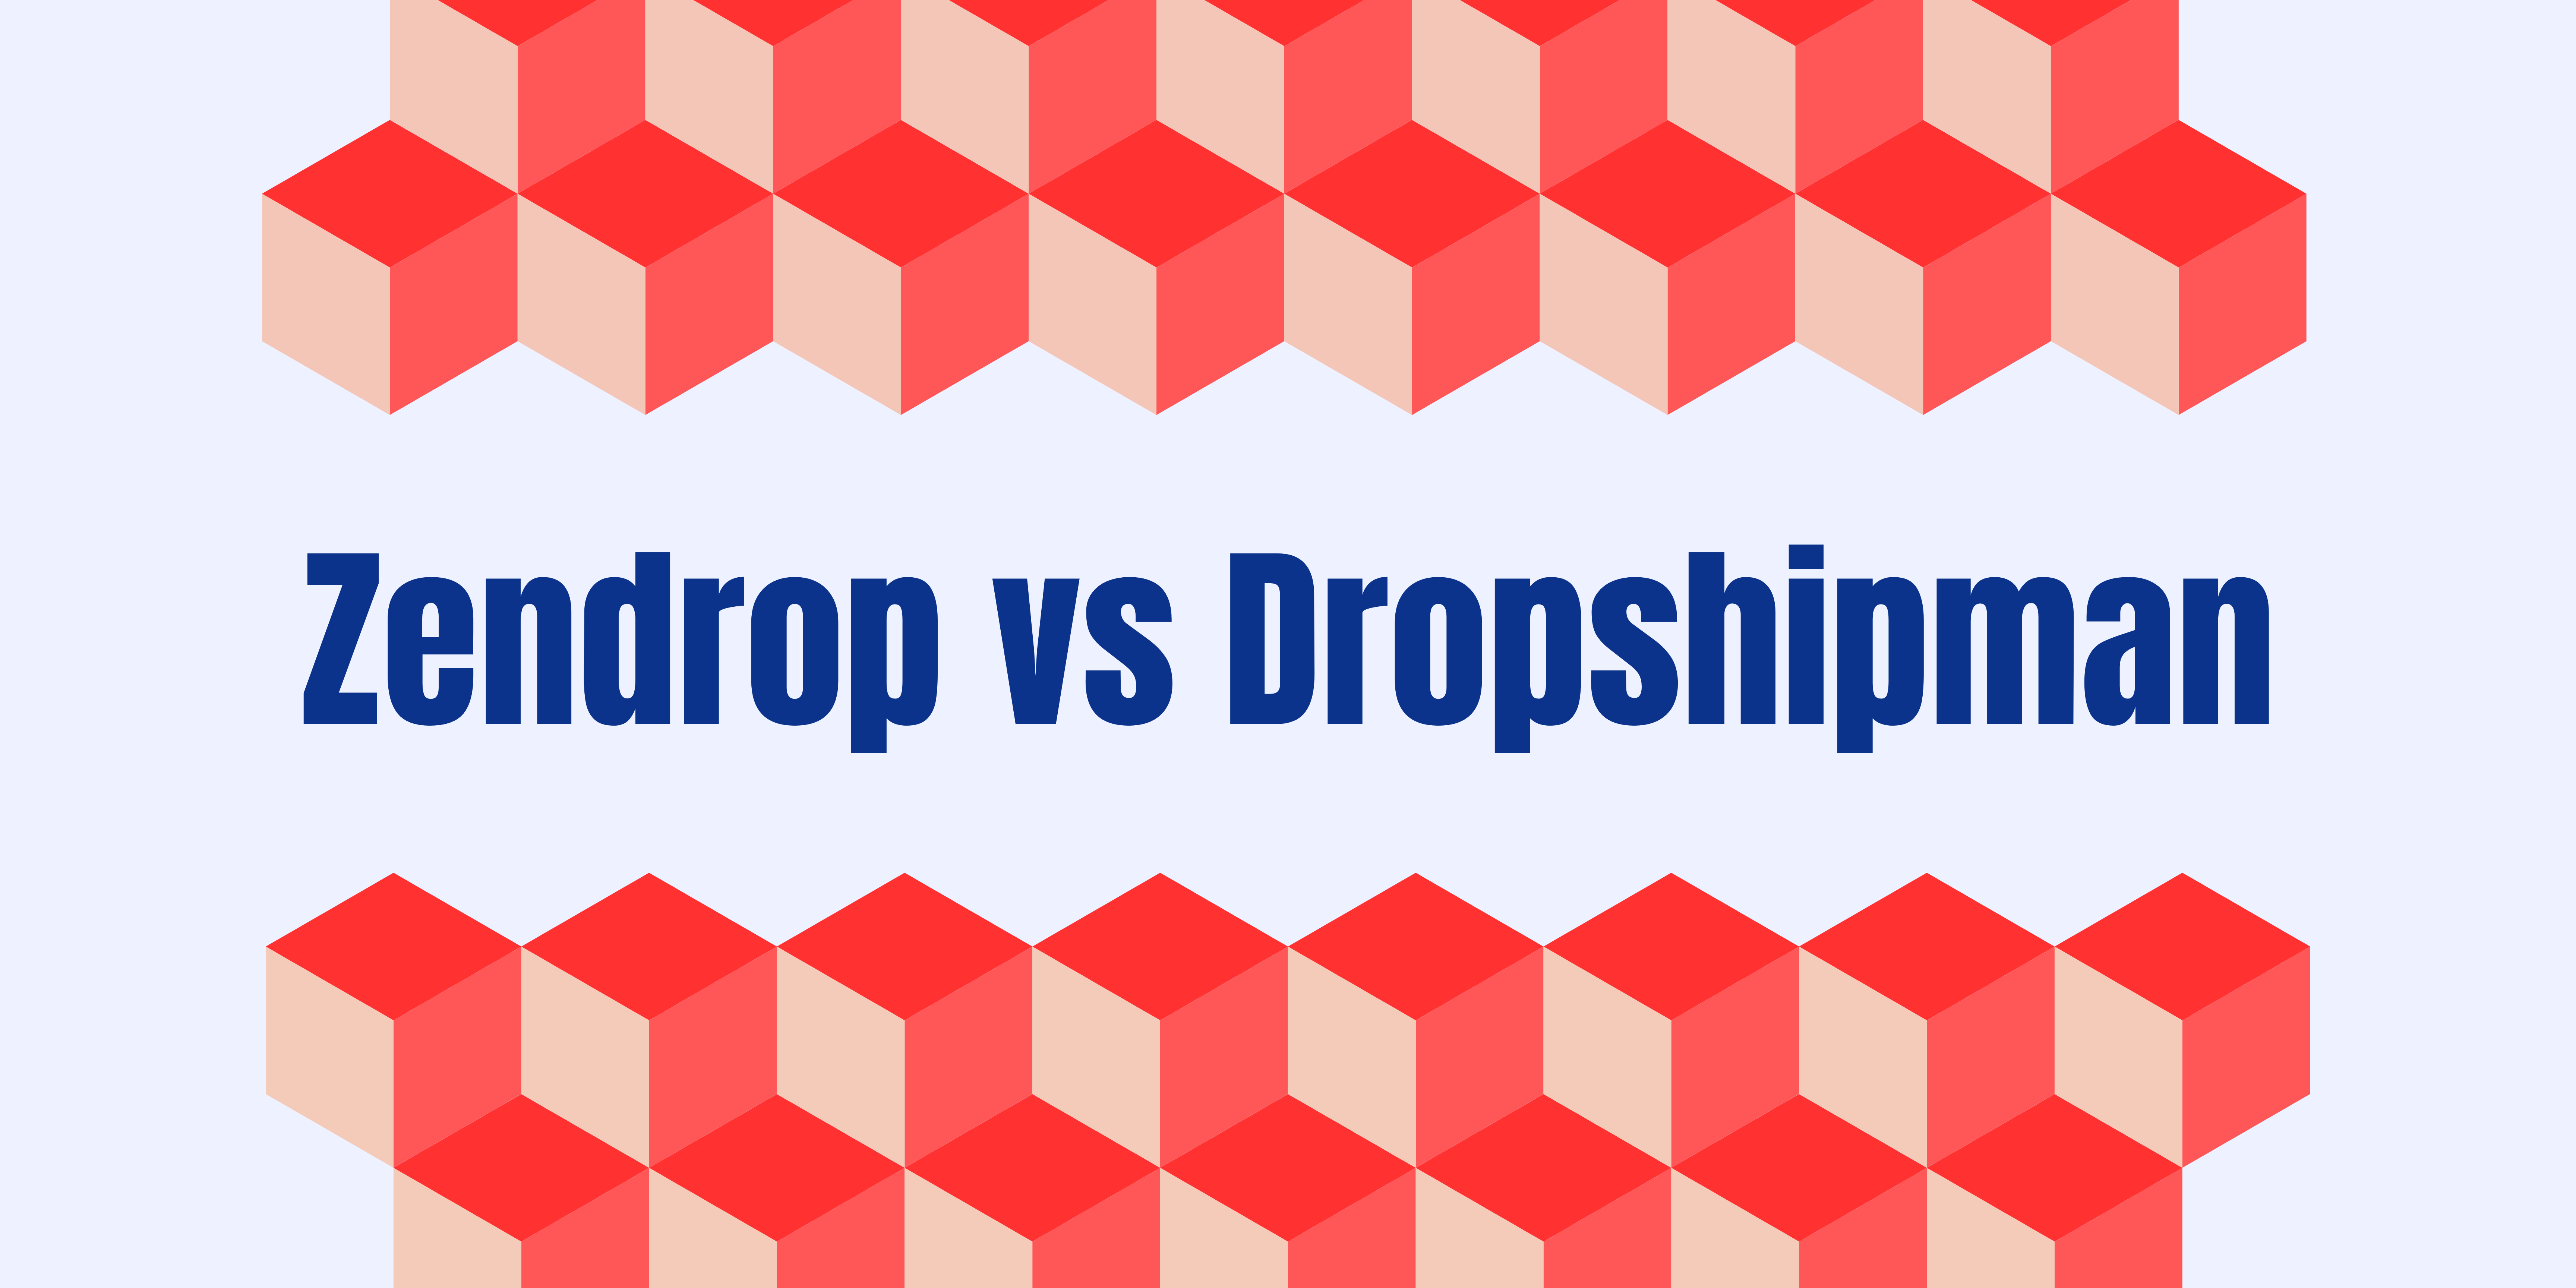 Dropshipman vs Zendrop